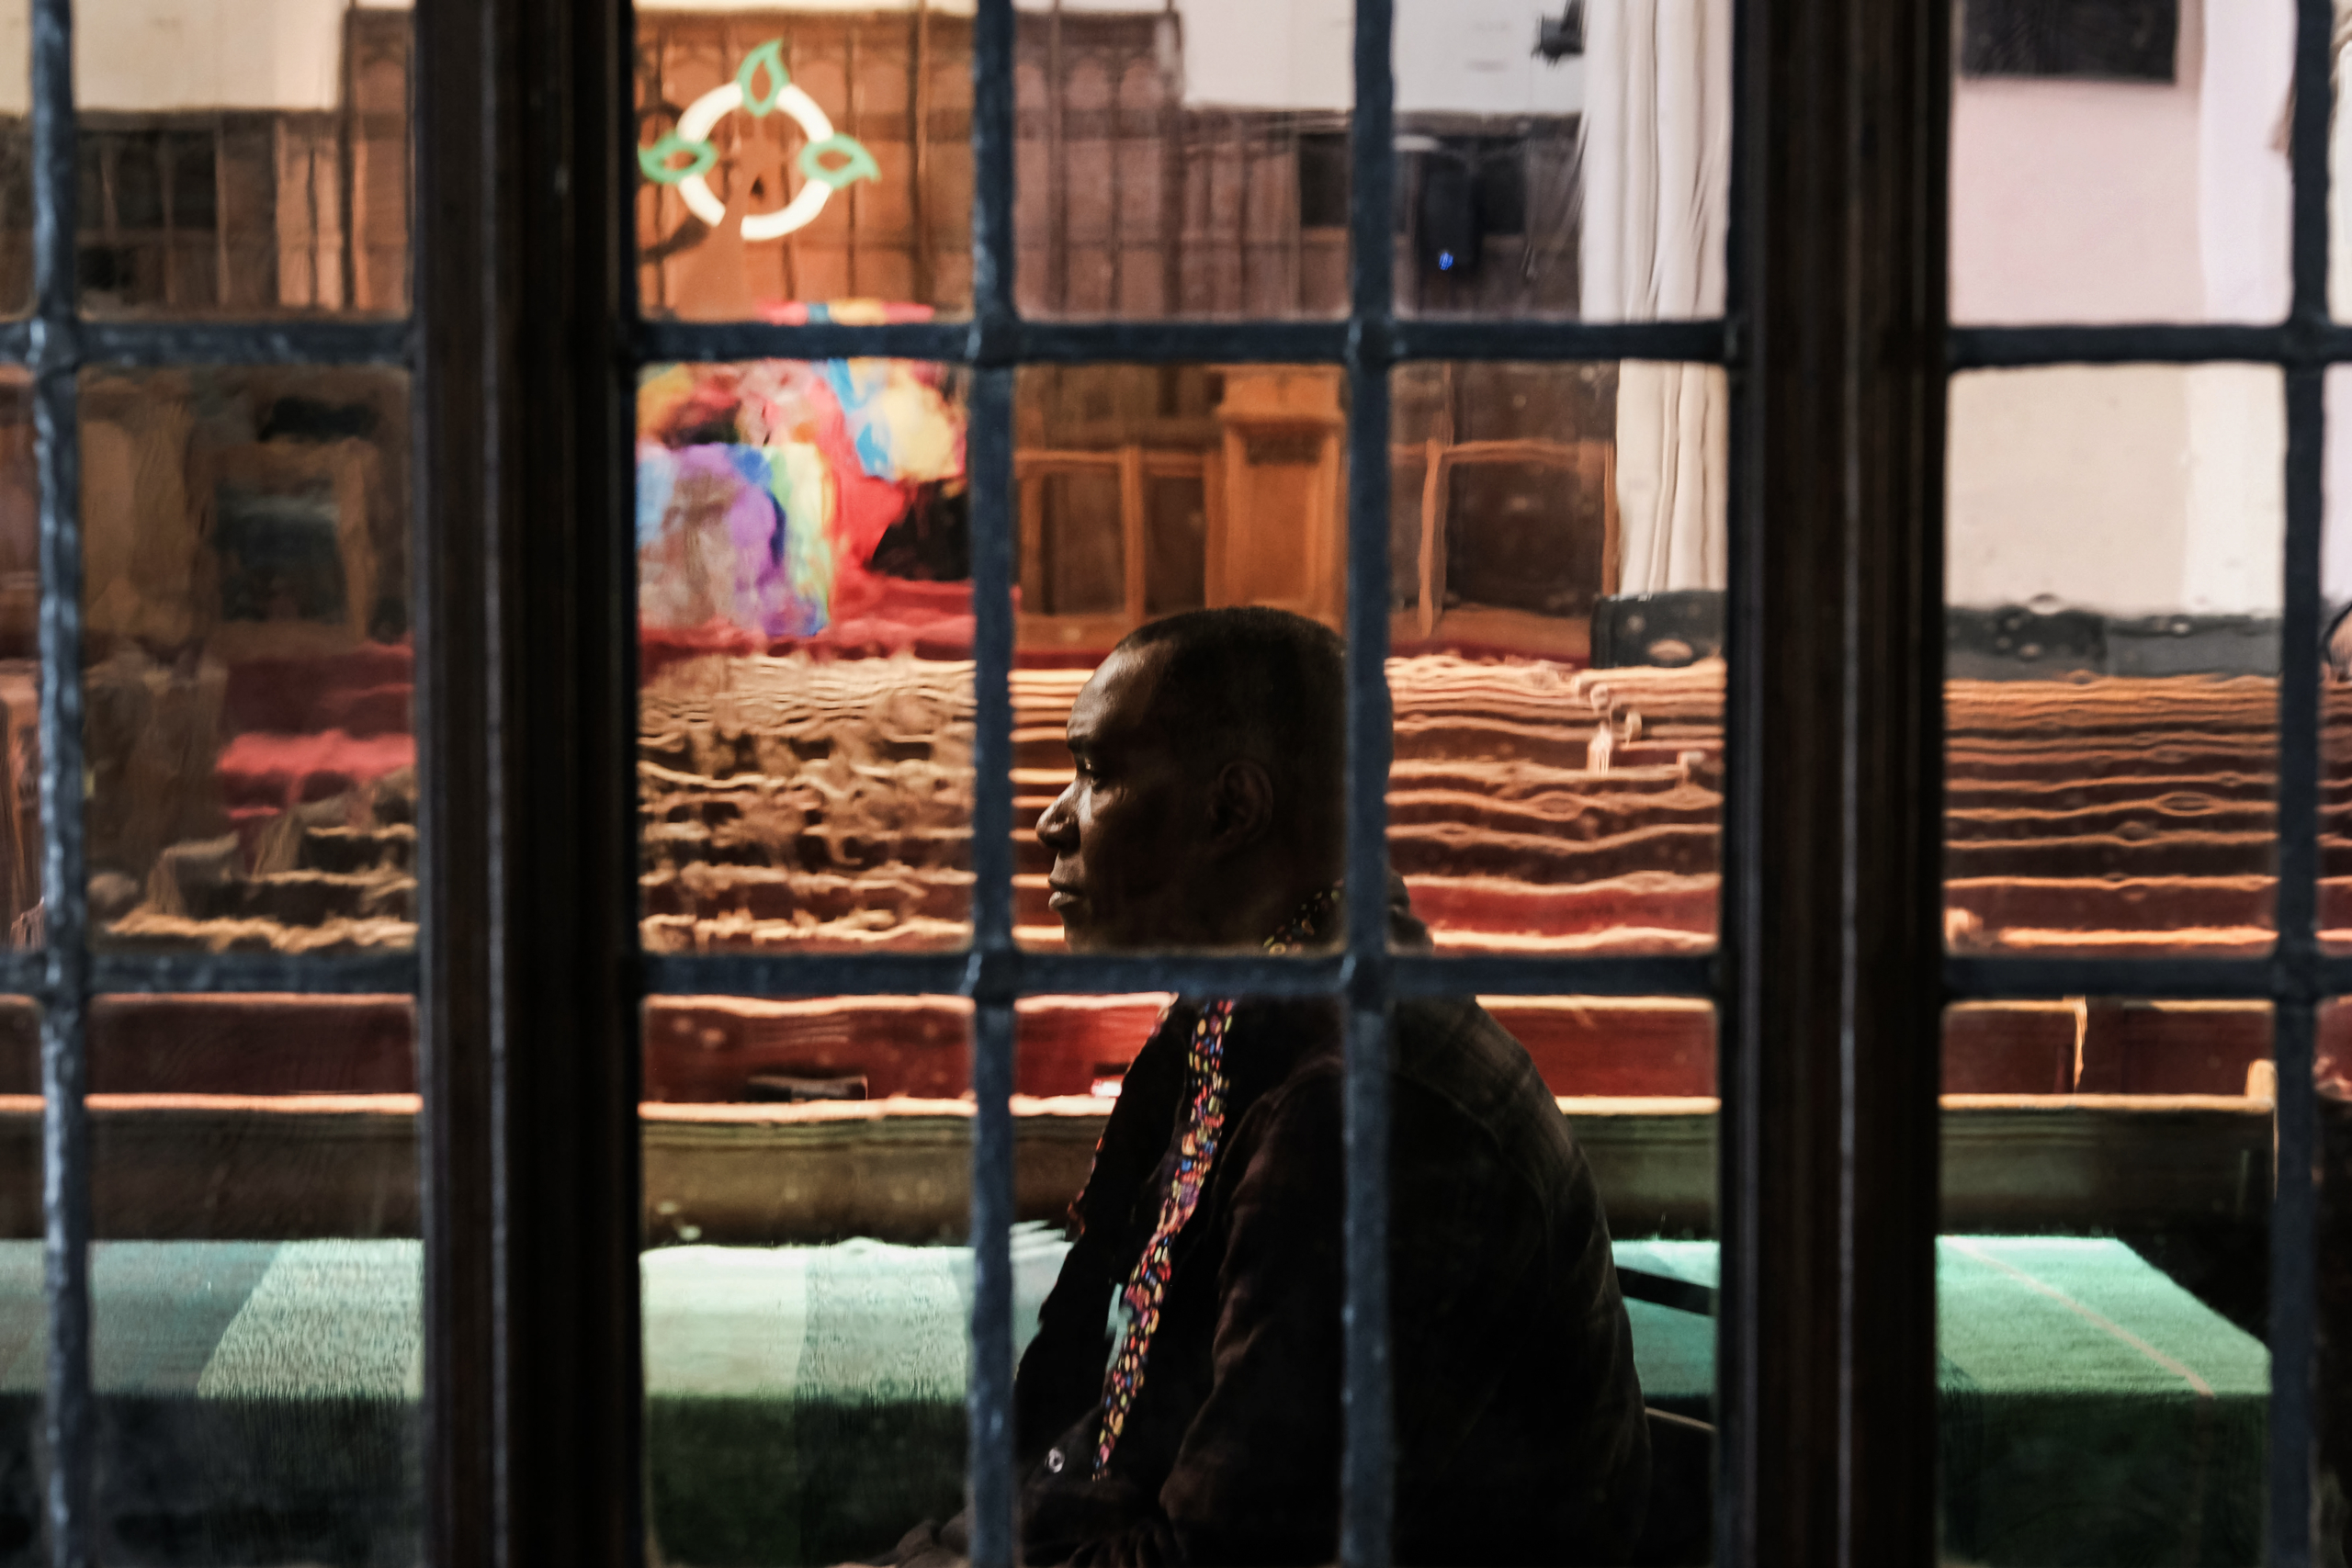 Ông Roody Chatelain, một tín đồ tại Nhà thờ Village, chờ đợi để vẽ một cây thánh giá tro lấp lánh trên trán trong một buổi lễ tại nhà thờ dành cho các thành viên của cộng đồng LGBT, ở thành phố New York vào ngày 06/03/2019. (Ảnh: Spencer Platt/Getty Images)